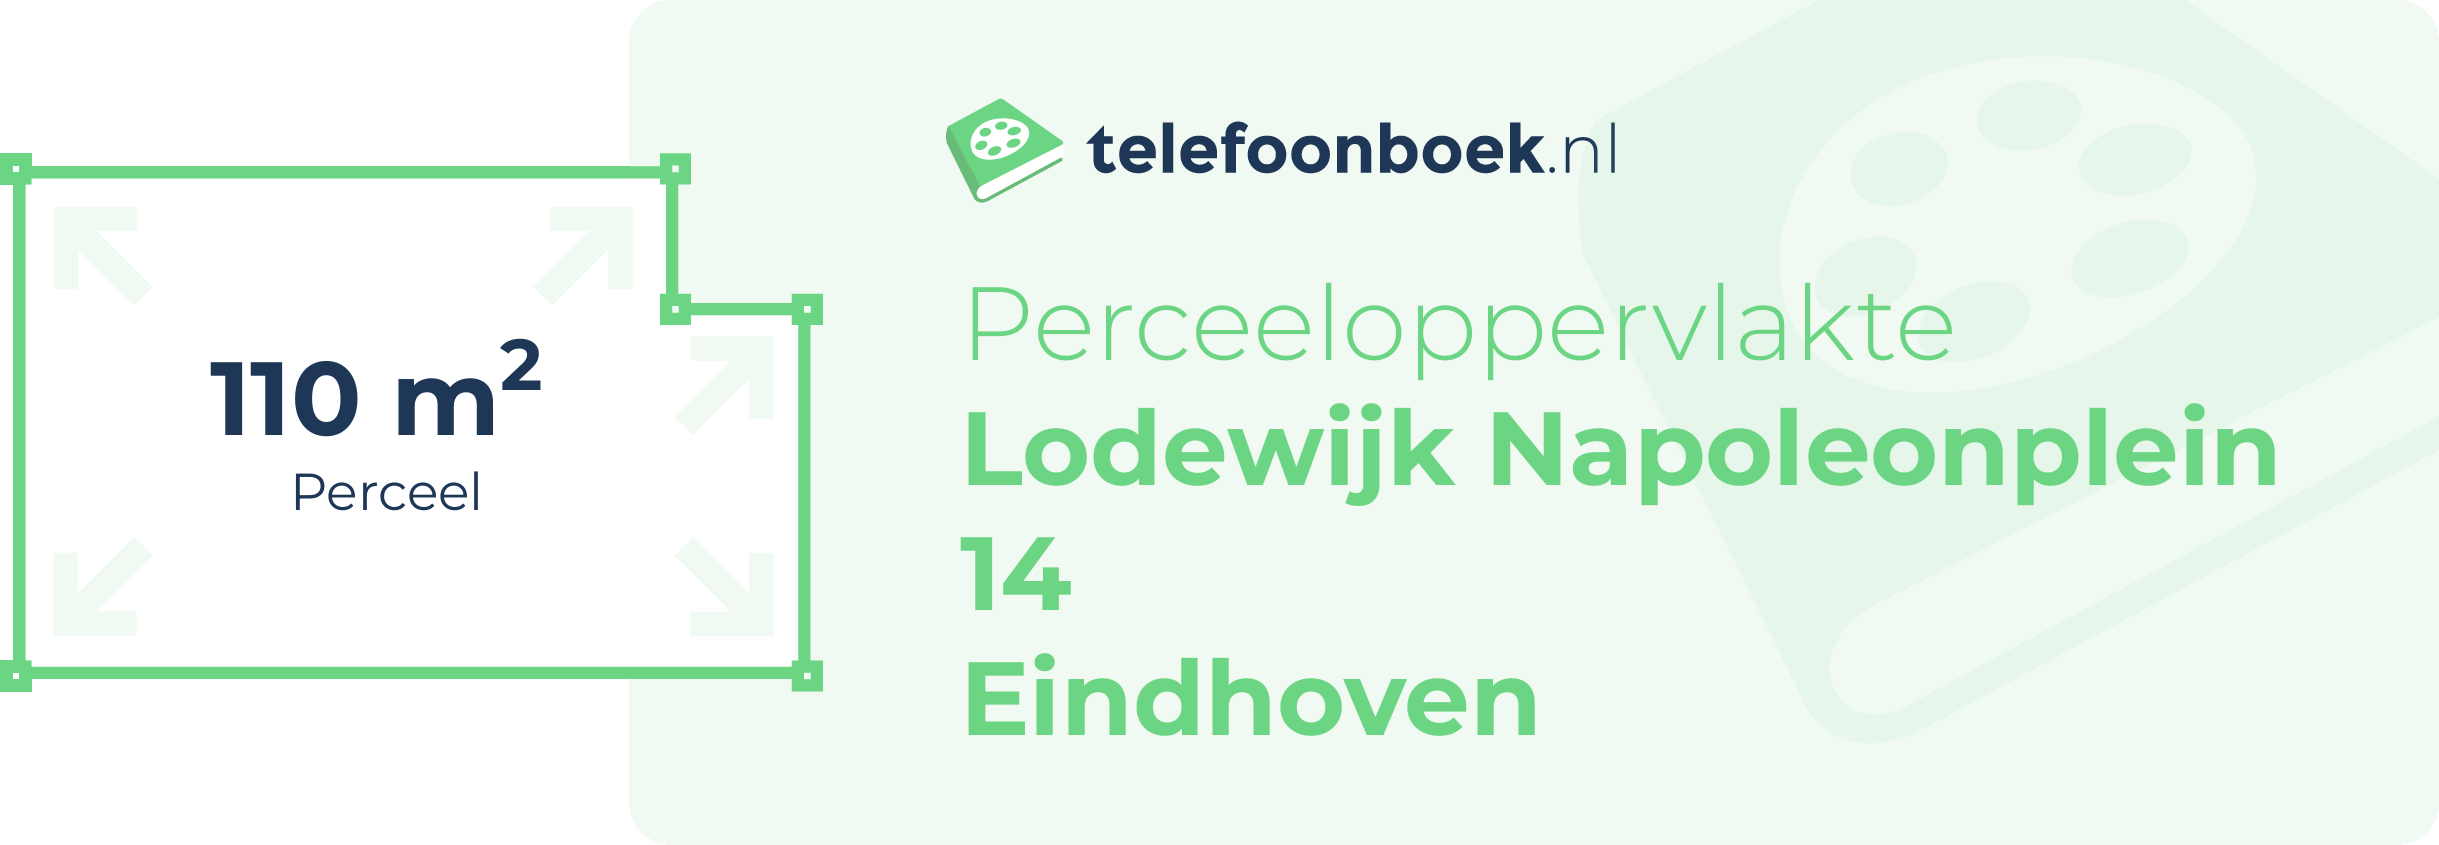 Perceeloppervlakte Lodewijk Napoleonplein 14 Eindhoven